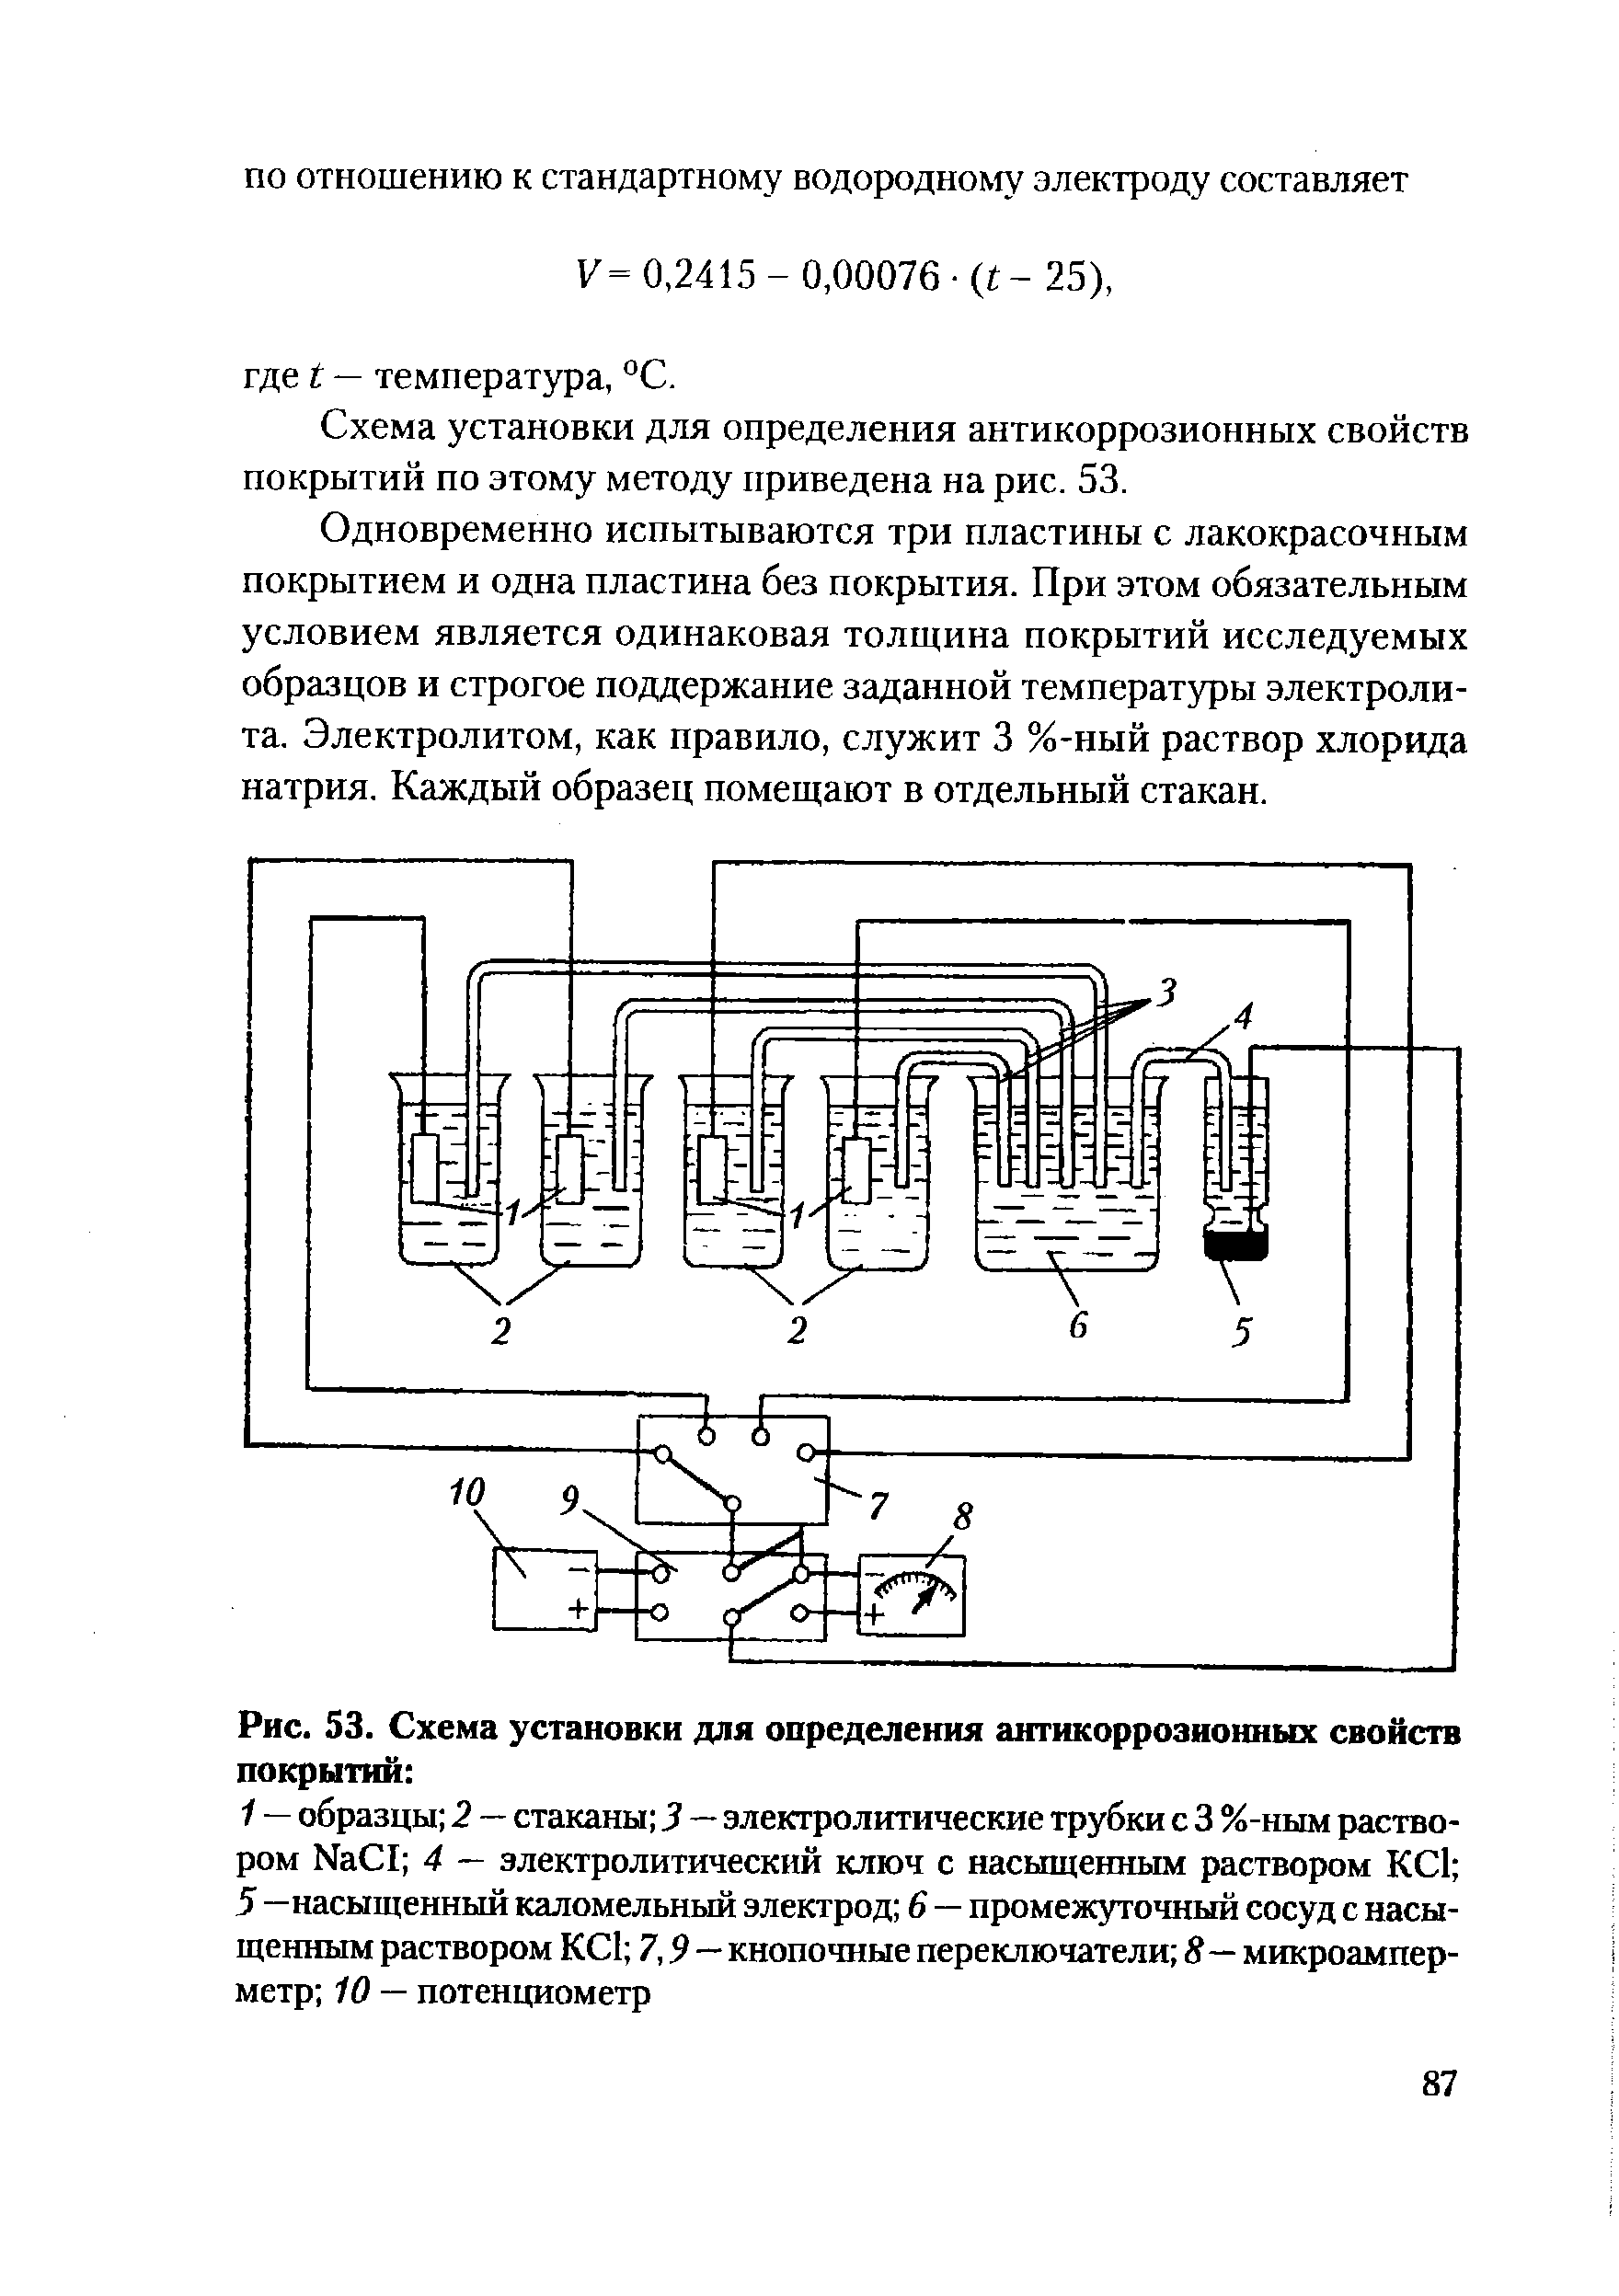 Рис. 53. Схема установки для определения антикоррозионных свойств покрытий 
